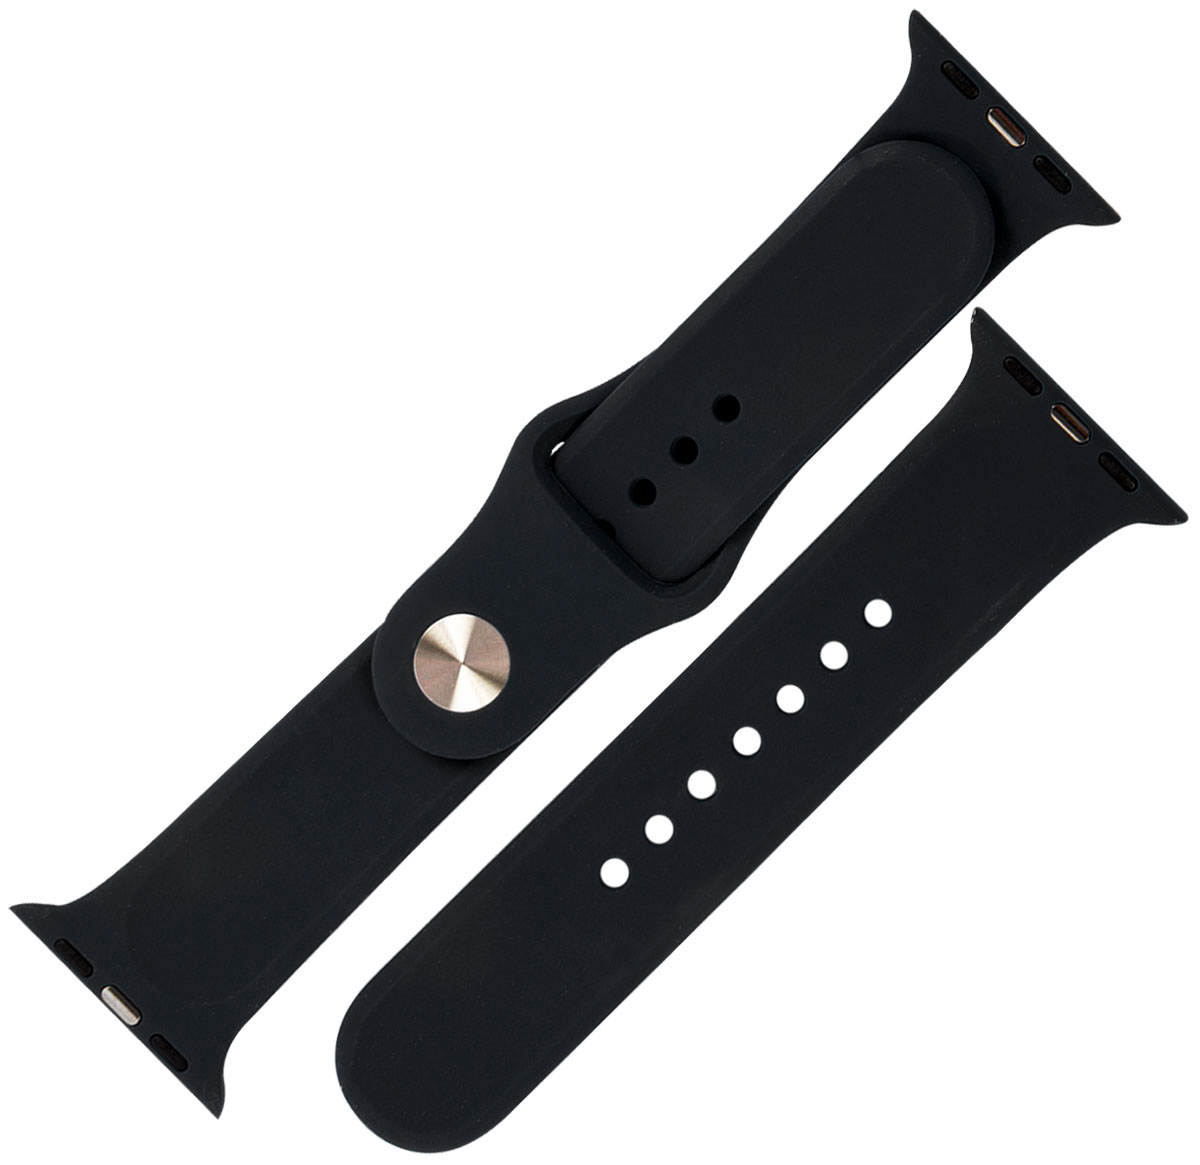 Ремешок силиконовый mObility для Apple watch – 42-44 мм (S3/S4/S5 SE/S6), черный ремешок силиконовый mobility для apple watch – 42 44 мм s3 s4 s5 se s6 грейпфрут